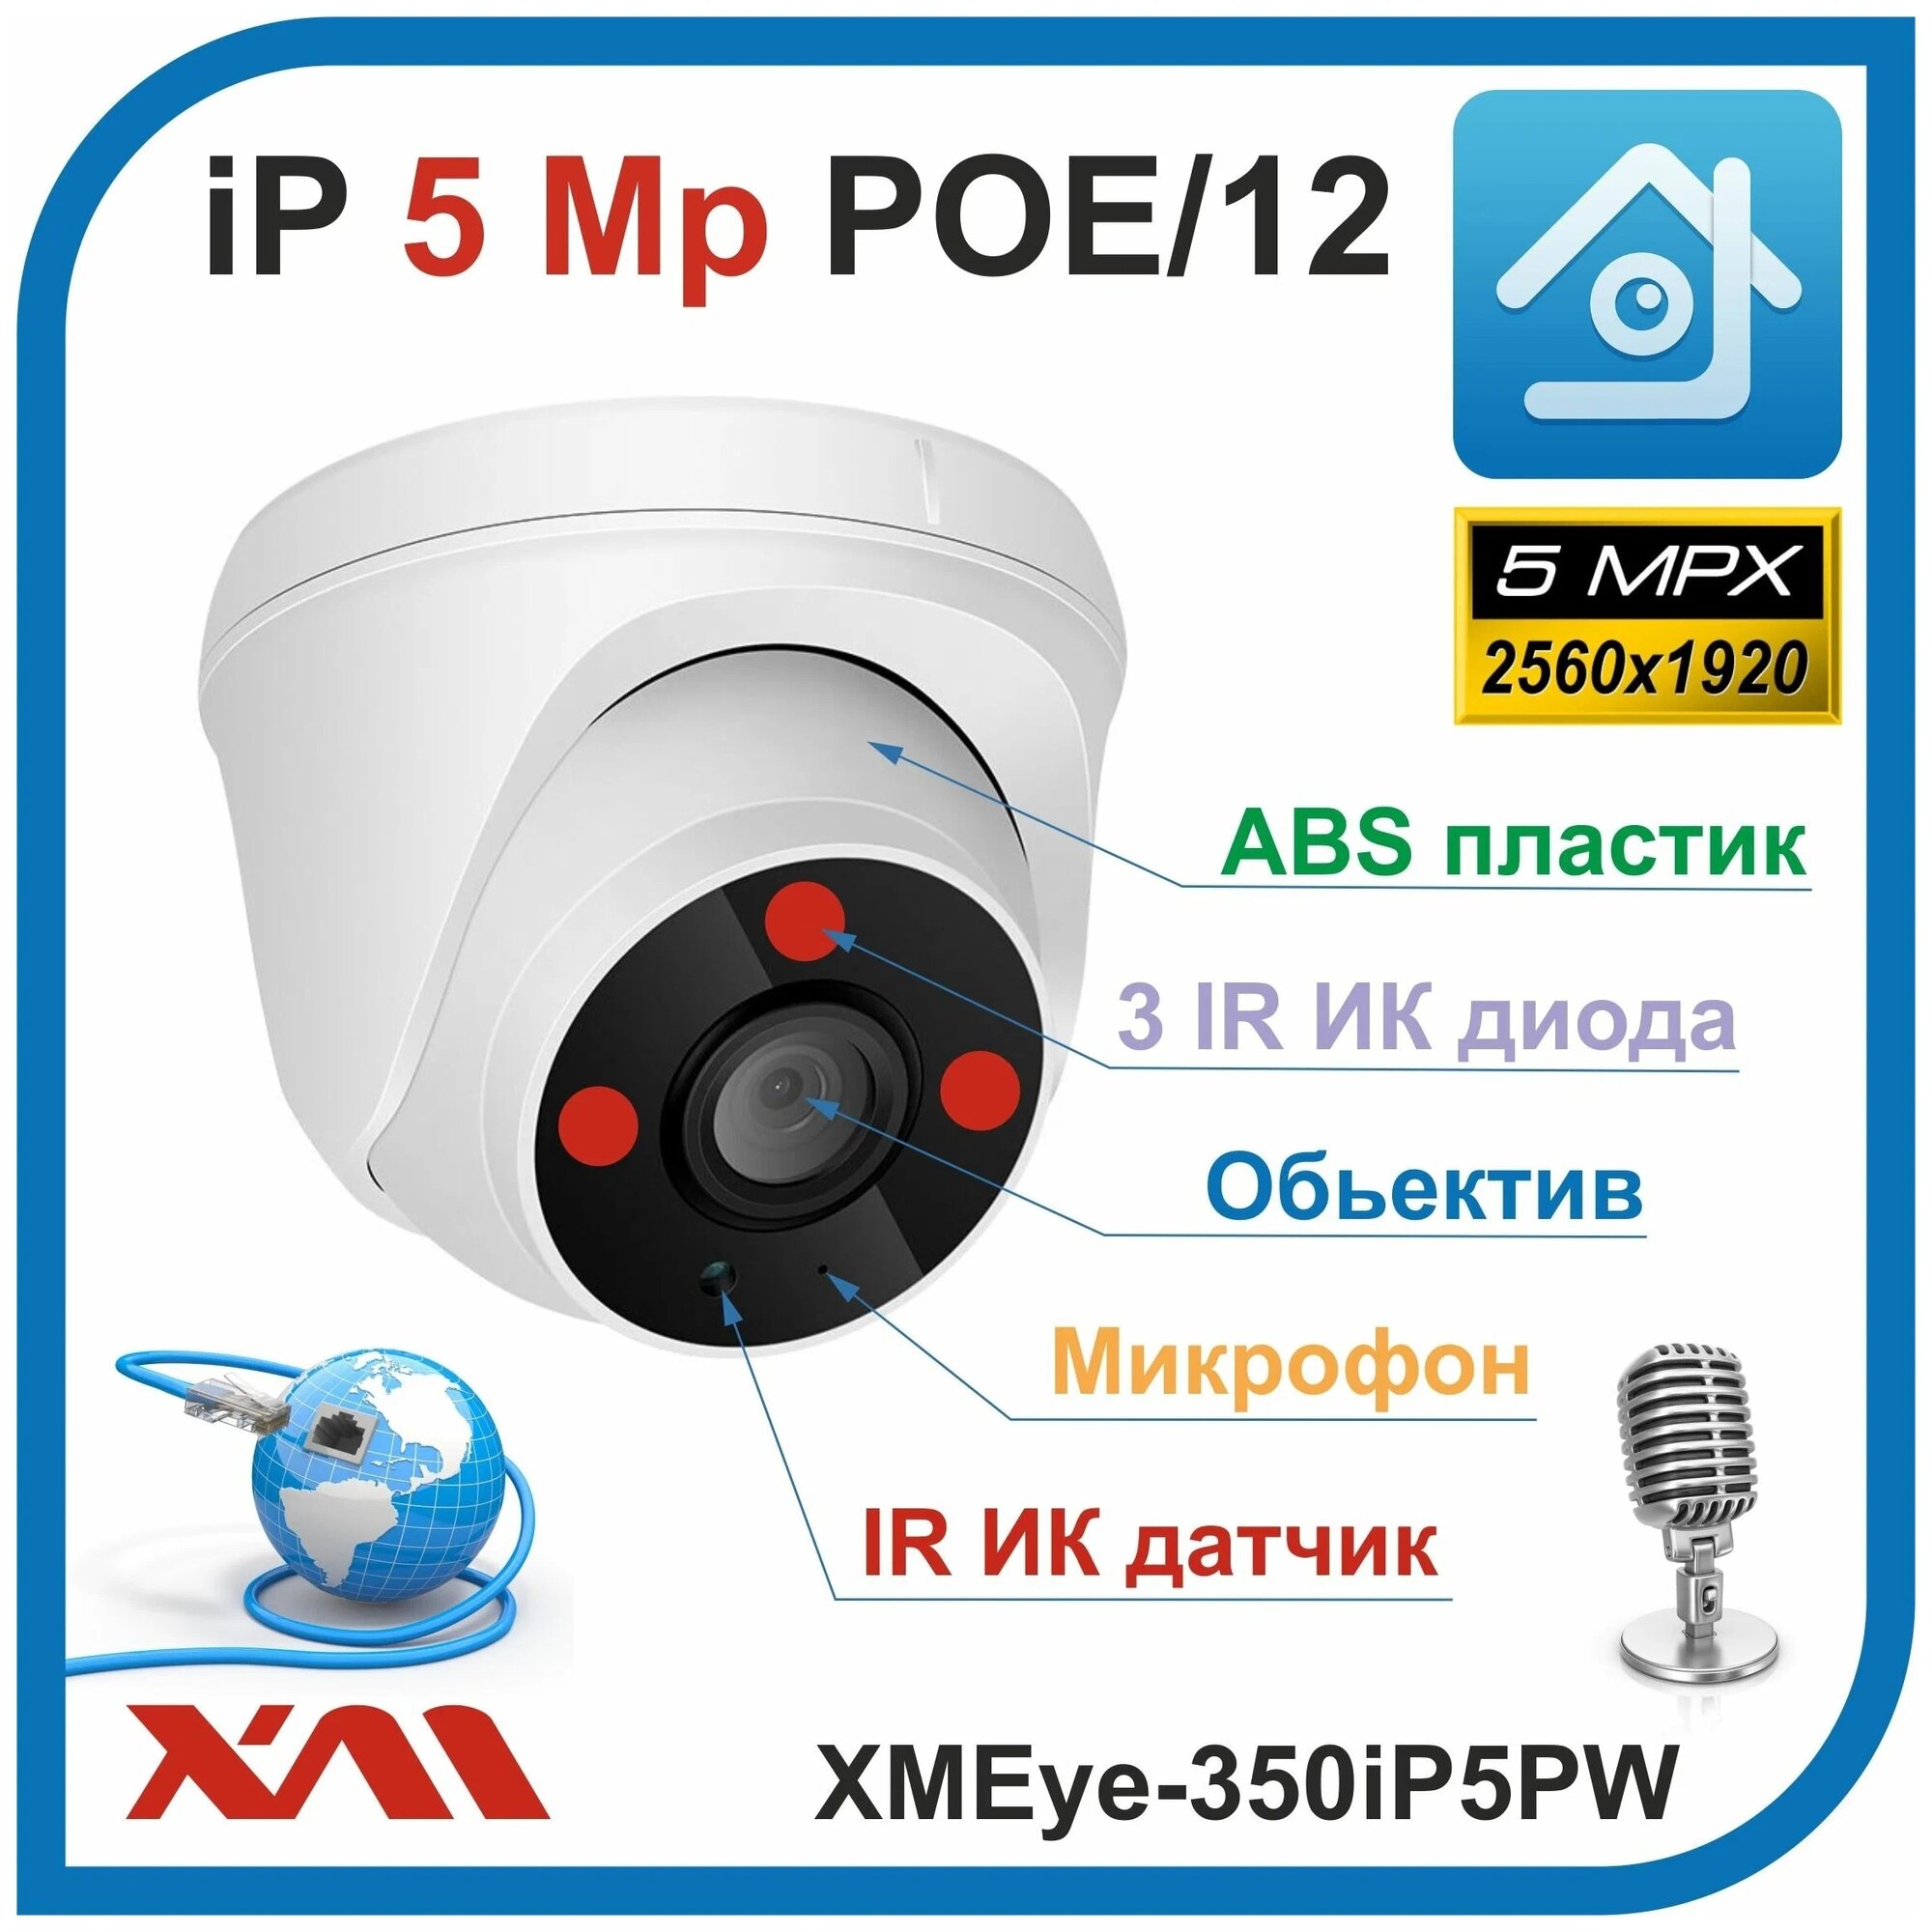 Камера видеонаблюдения купольная с микрофоном IP, 5Mpx, 1920P, XMEye-350iP5PW-2.8. POE/12 (Пластик/Белая) - фотография № 4